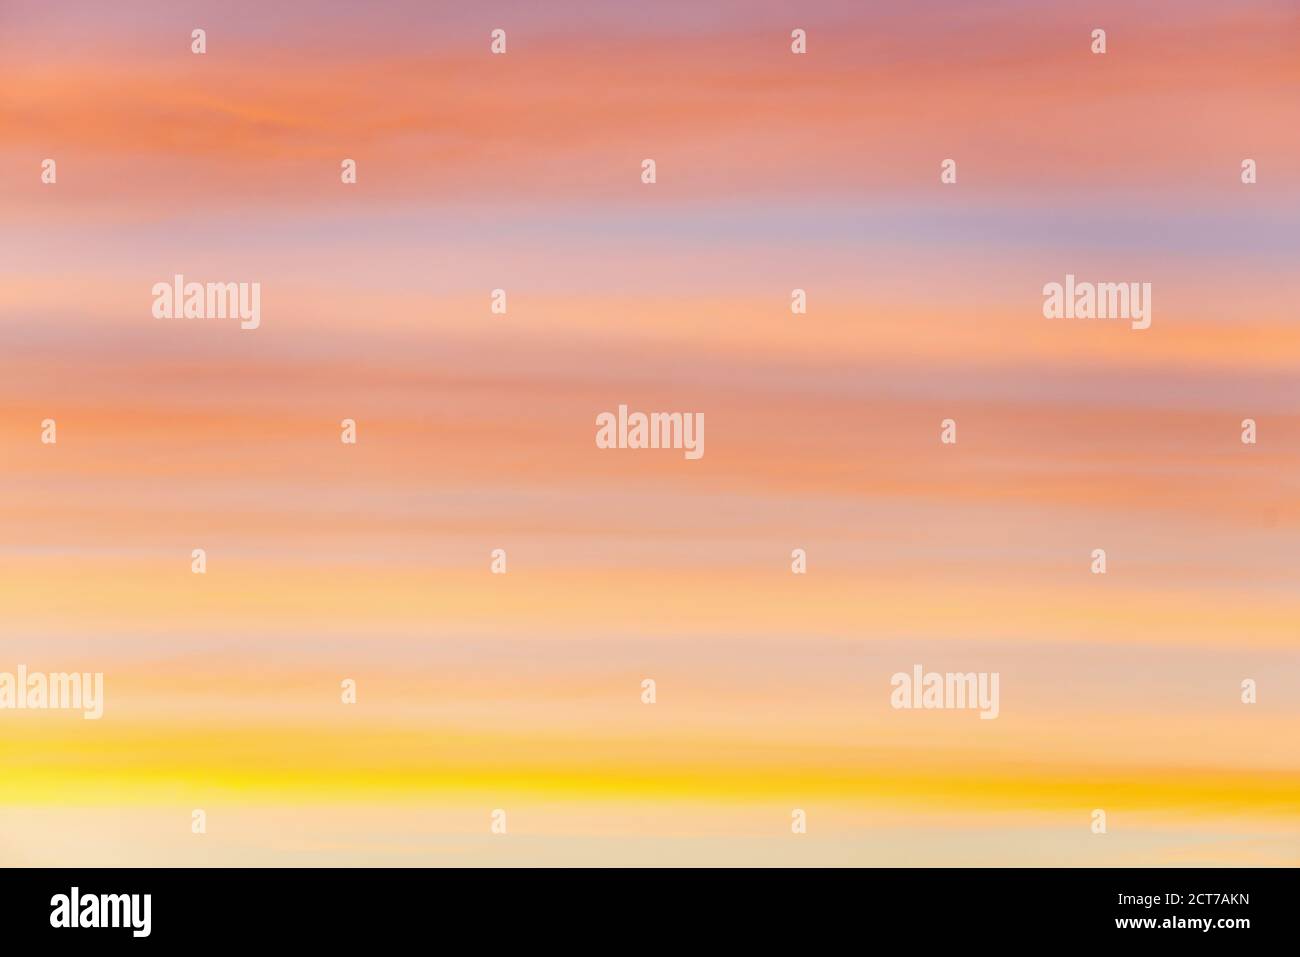 Couleurs pastel Sunset Sky Cloudscape pour Backgrounds et Wallpapers. Banque D'Images